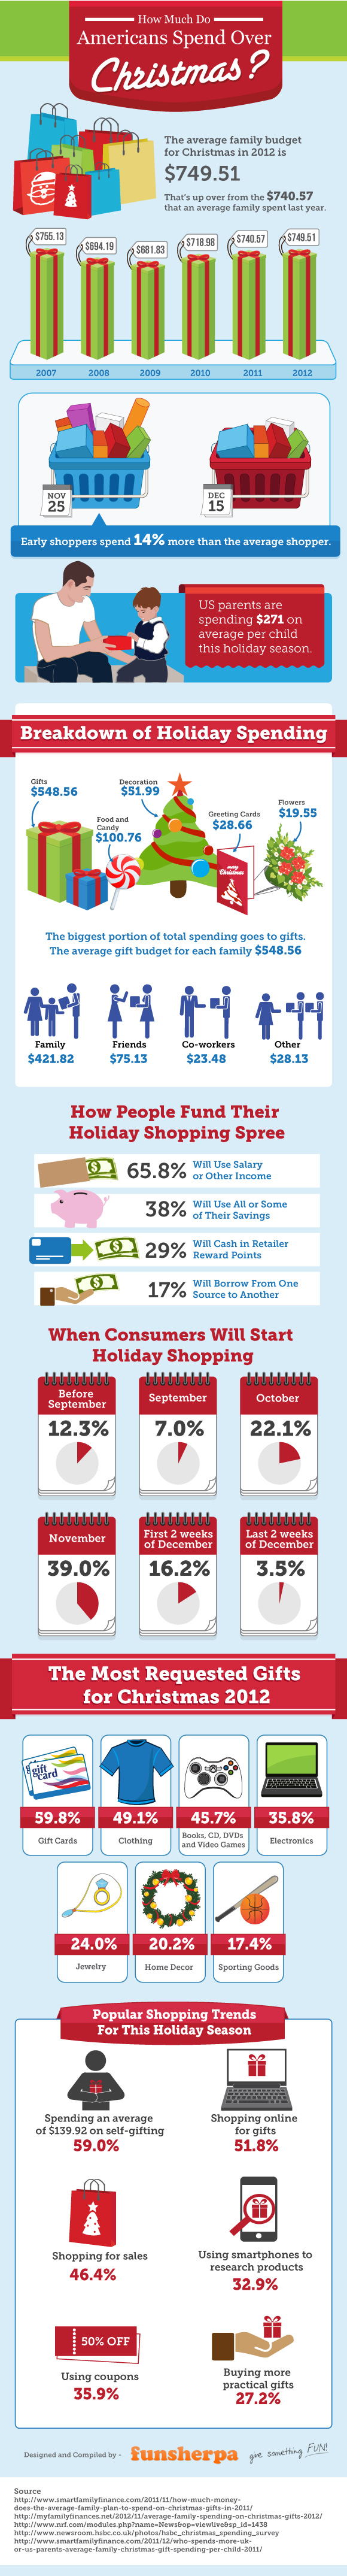 Spending Over Christmas in America